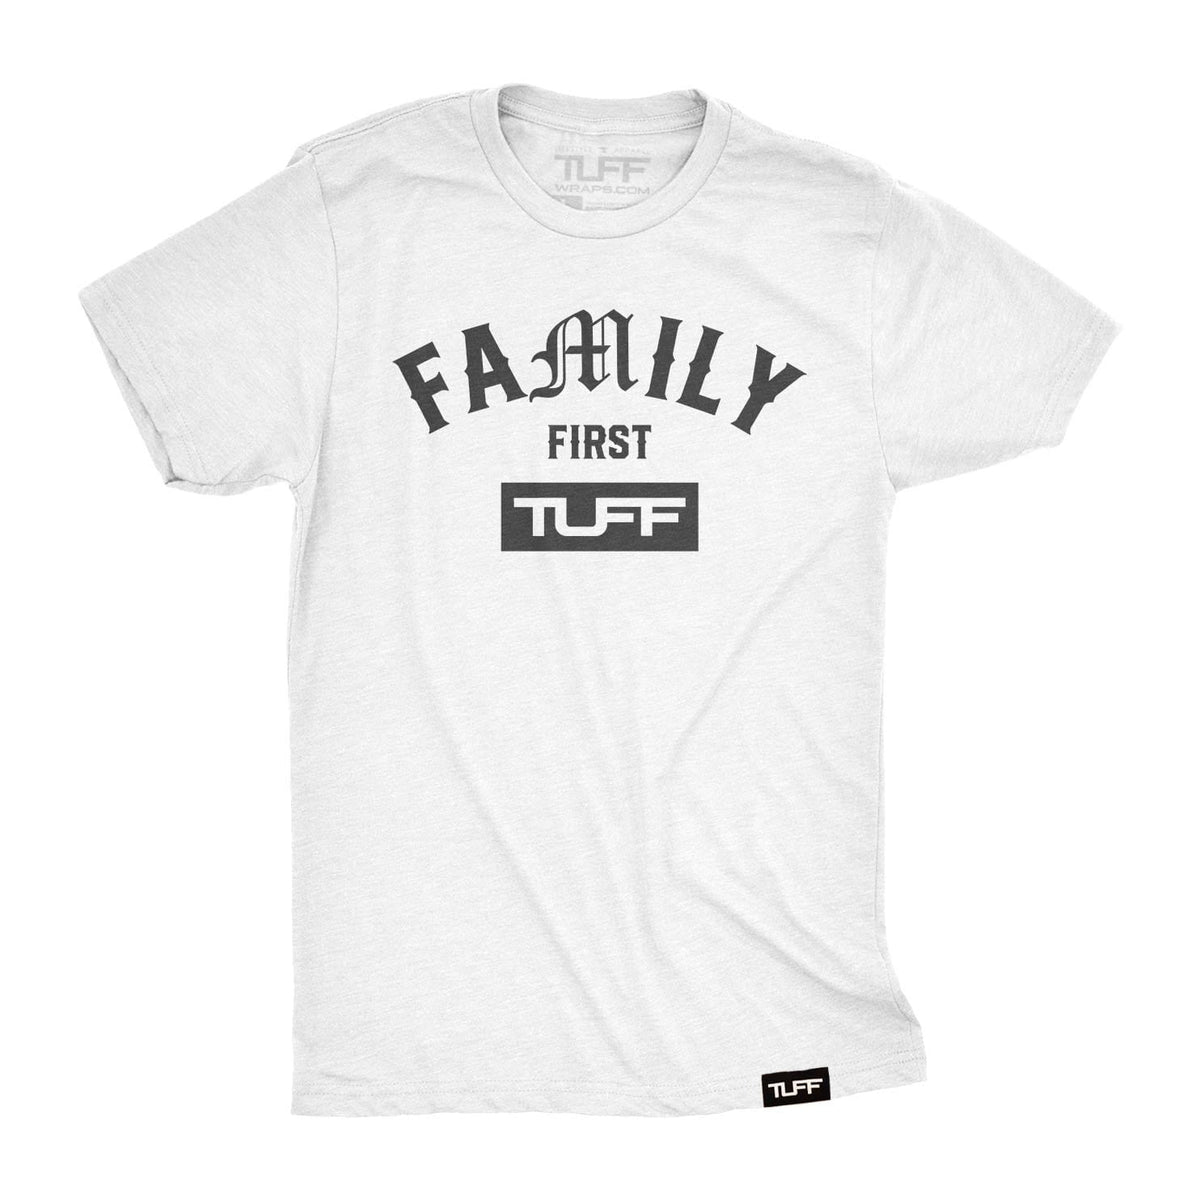 Family First Tee S / White TuffWraps.com